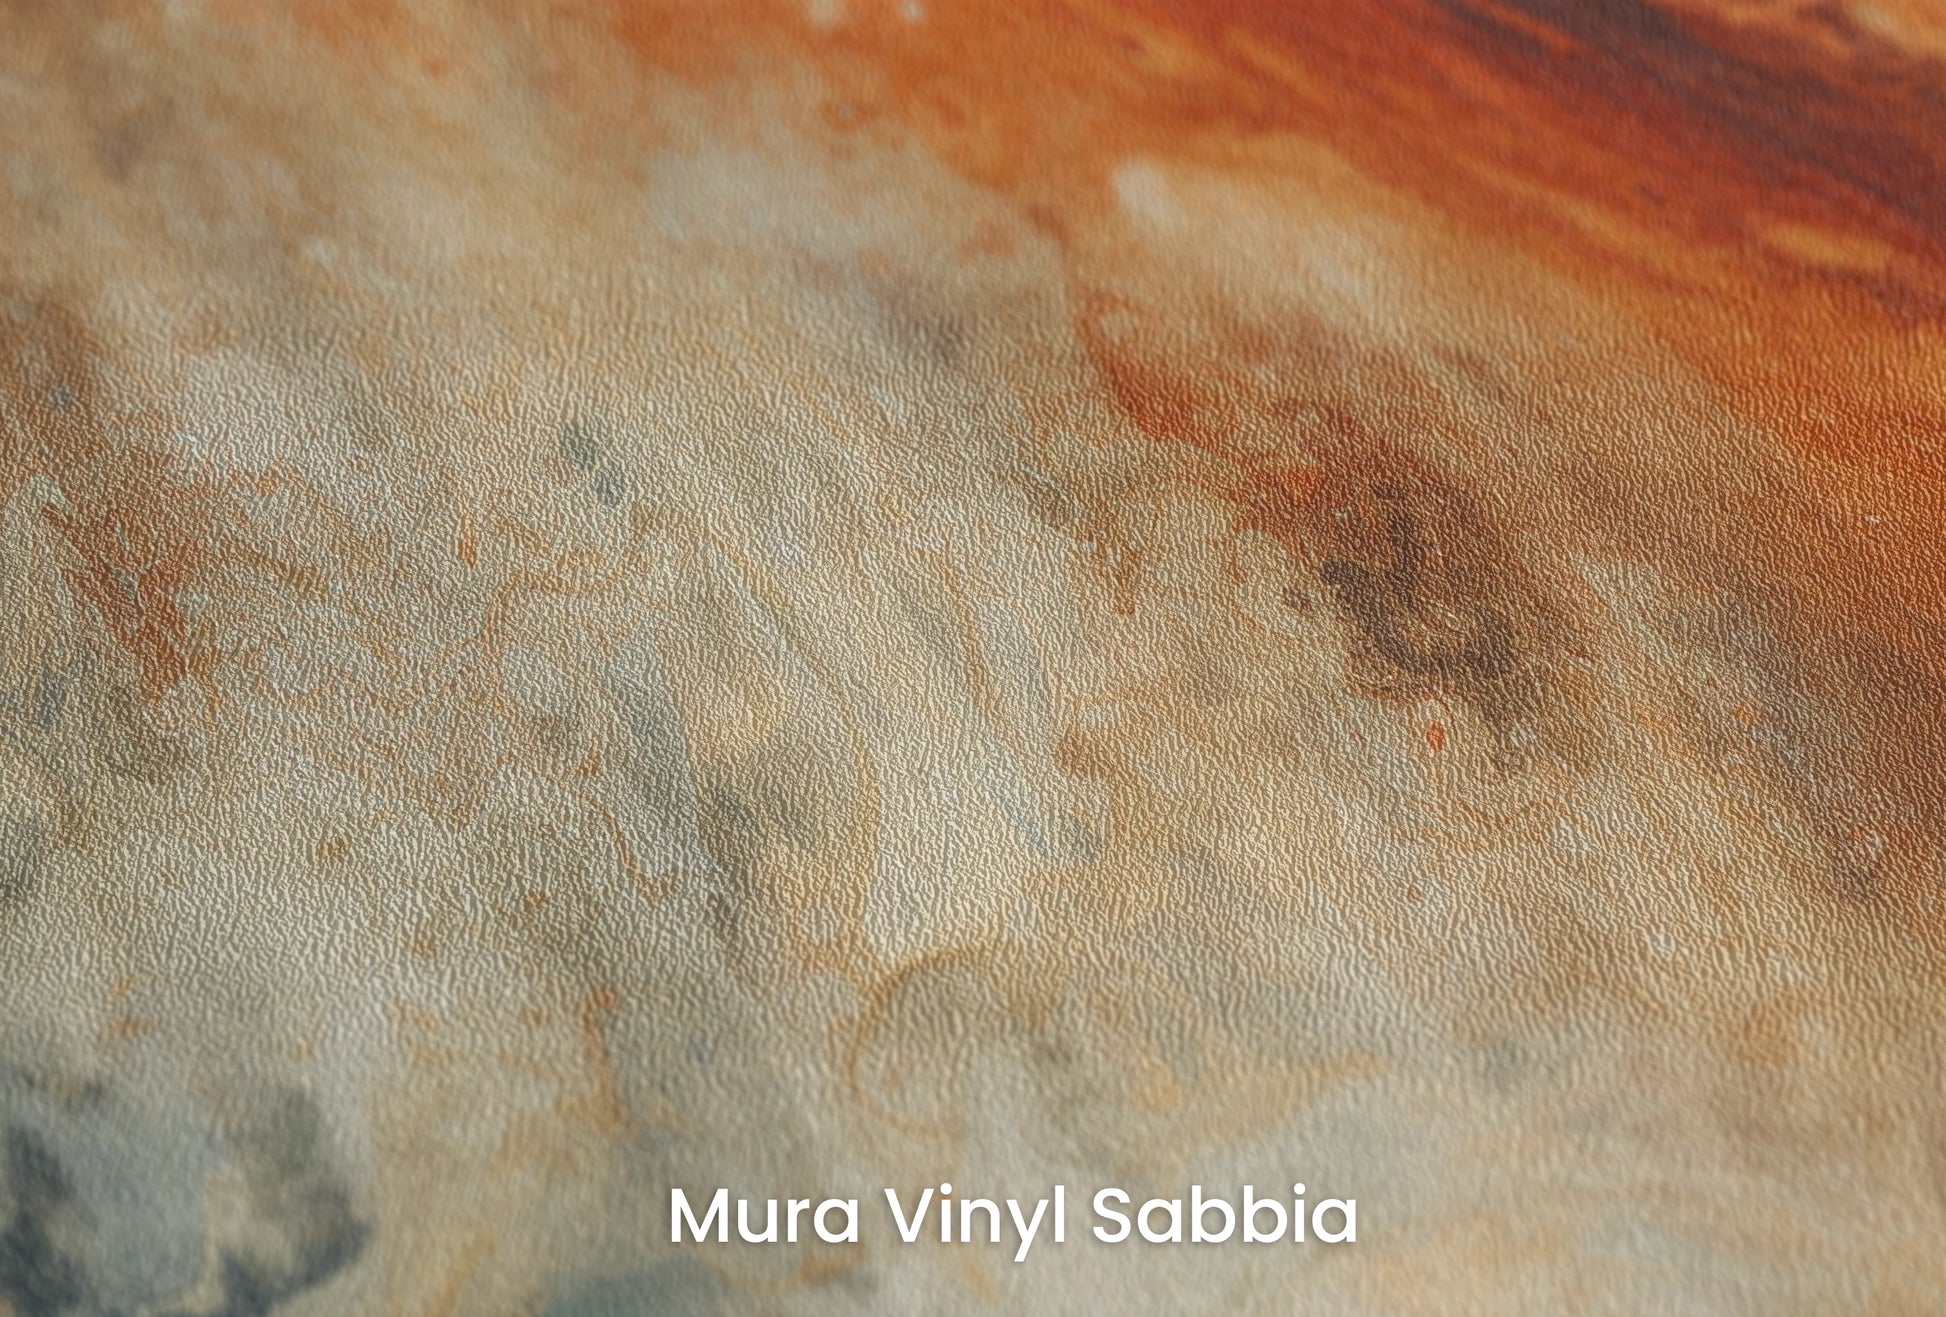 Zbliżenie na artystyczną fototapetę o nazwie Jupiter's Storm na podłożu Mura Vinyl Sabbia struktura grubego ziarna piasku.